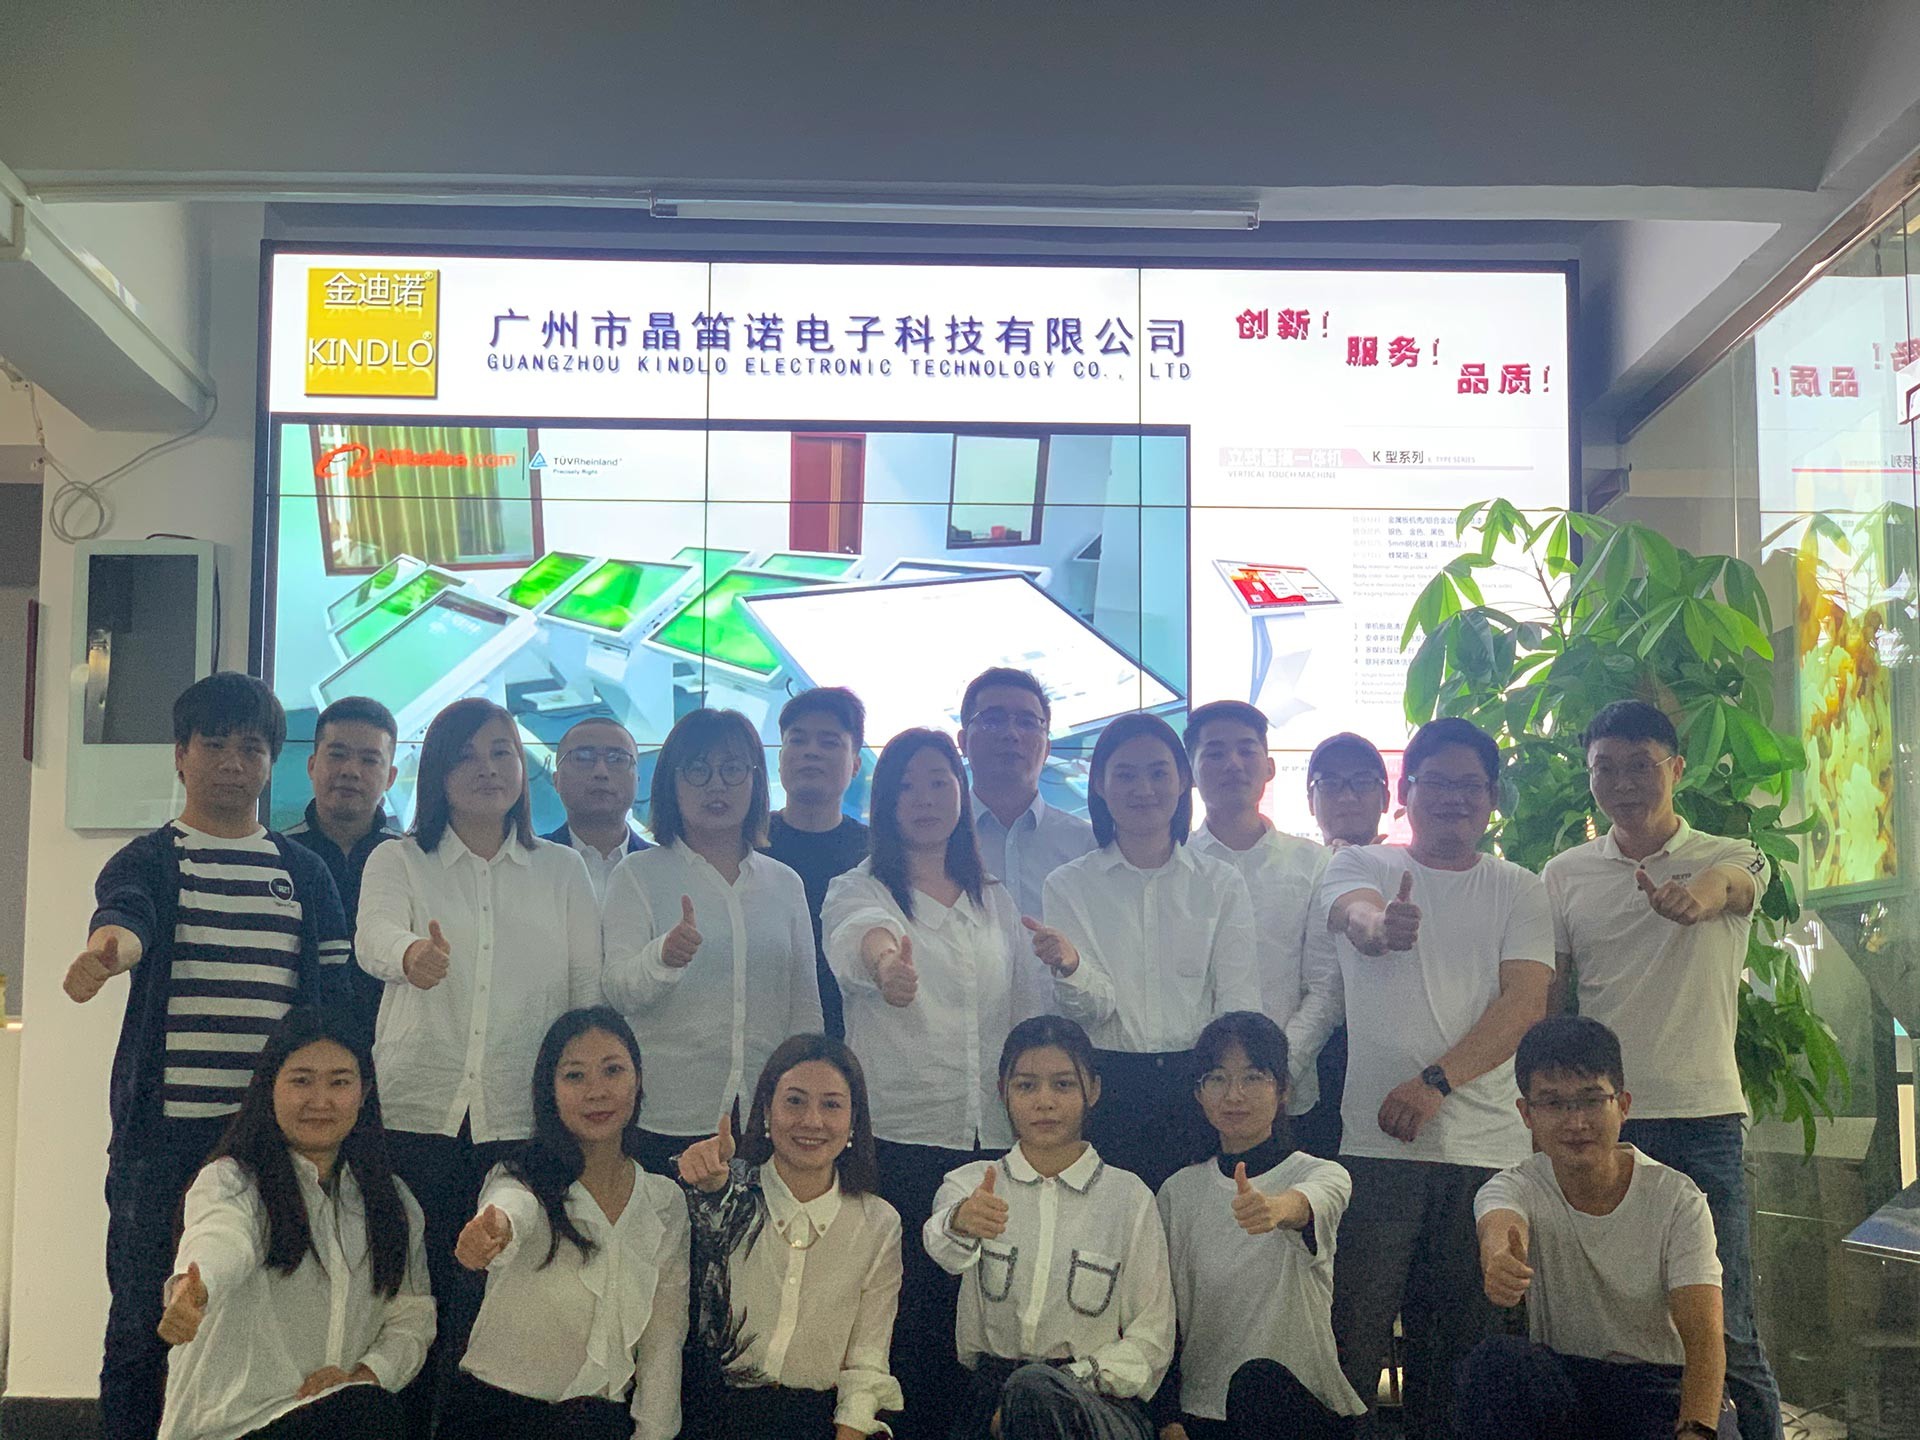 중국 Guangzhou Jingdinuo Electronic Technology Co., Ltd.